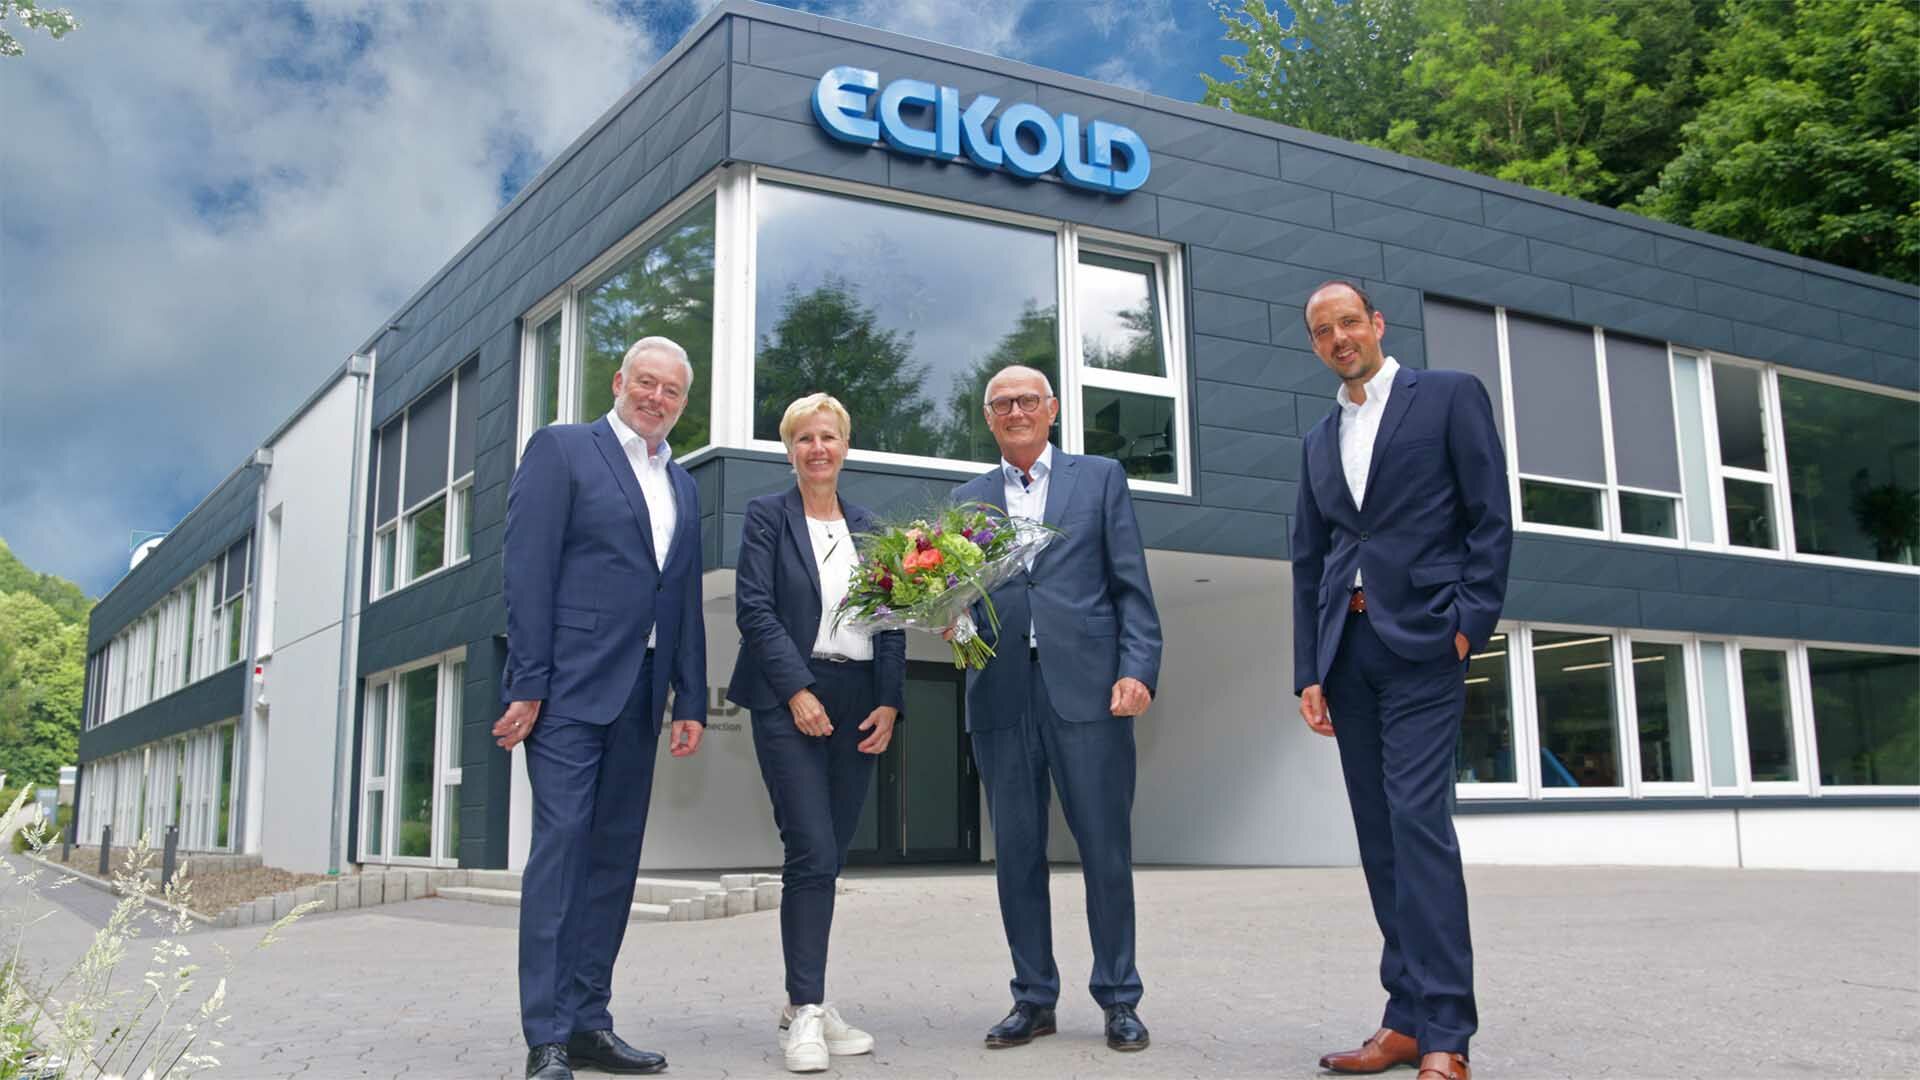 ECKOLD Geschäftsführung Ralf Pilgrim, Annegret Eckold, Patric Daske zusammen mit Dr. R. Beyer